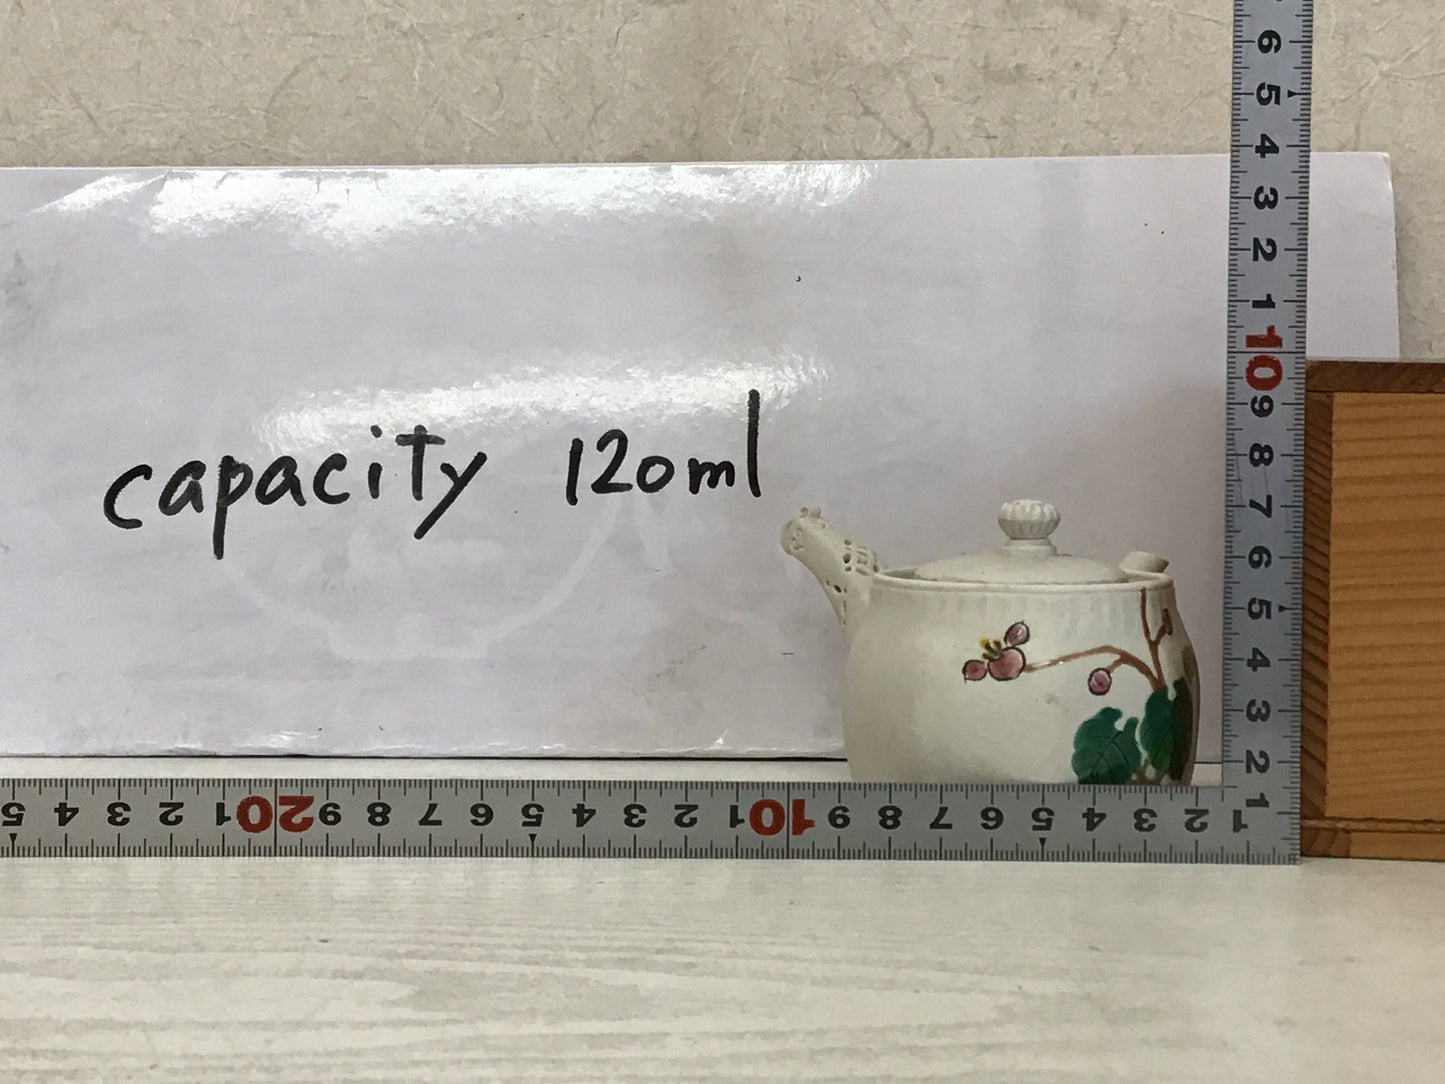 Y1812 KYUSU Banko-ware Teapot signed box Japan Tea Ceremony antique pot